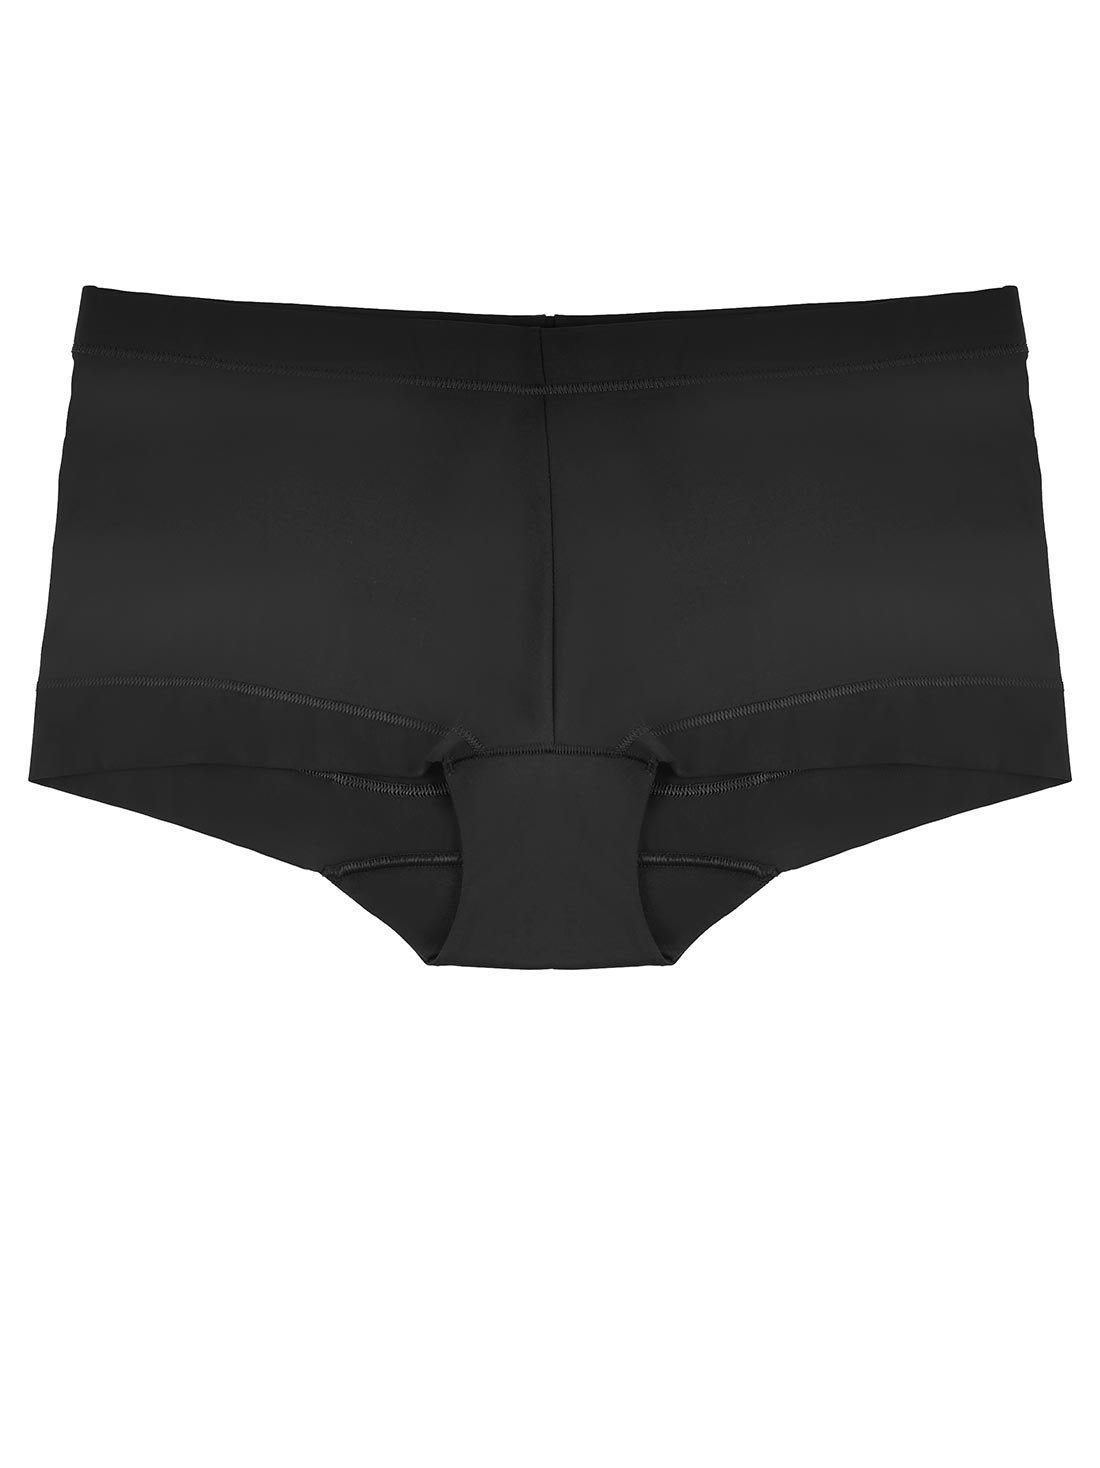 BIZIZA Women's Boyshort Underwear High Waisted Butt Lifter Shorts Hipster  Seamless Stretch Panty Hot Pink XL